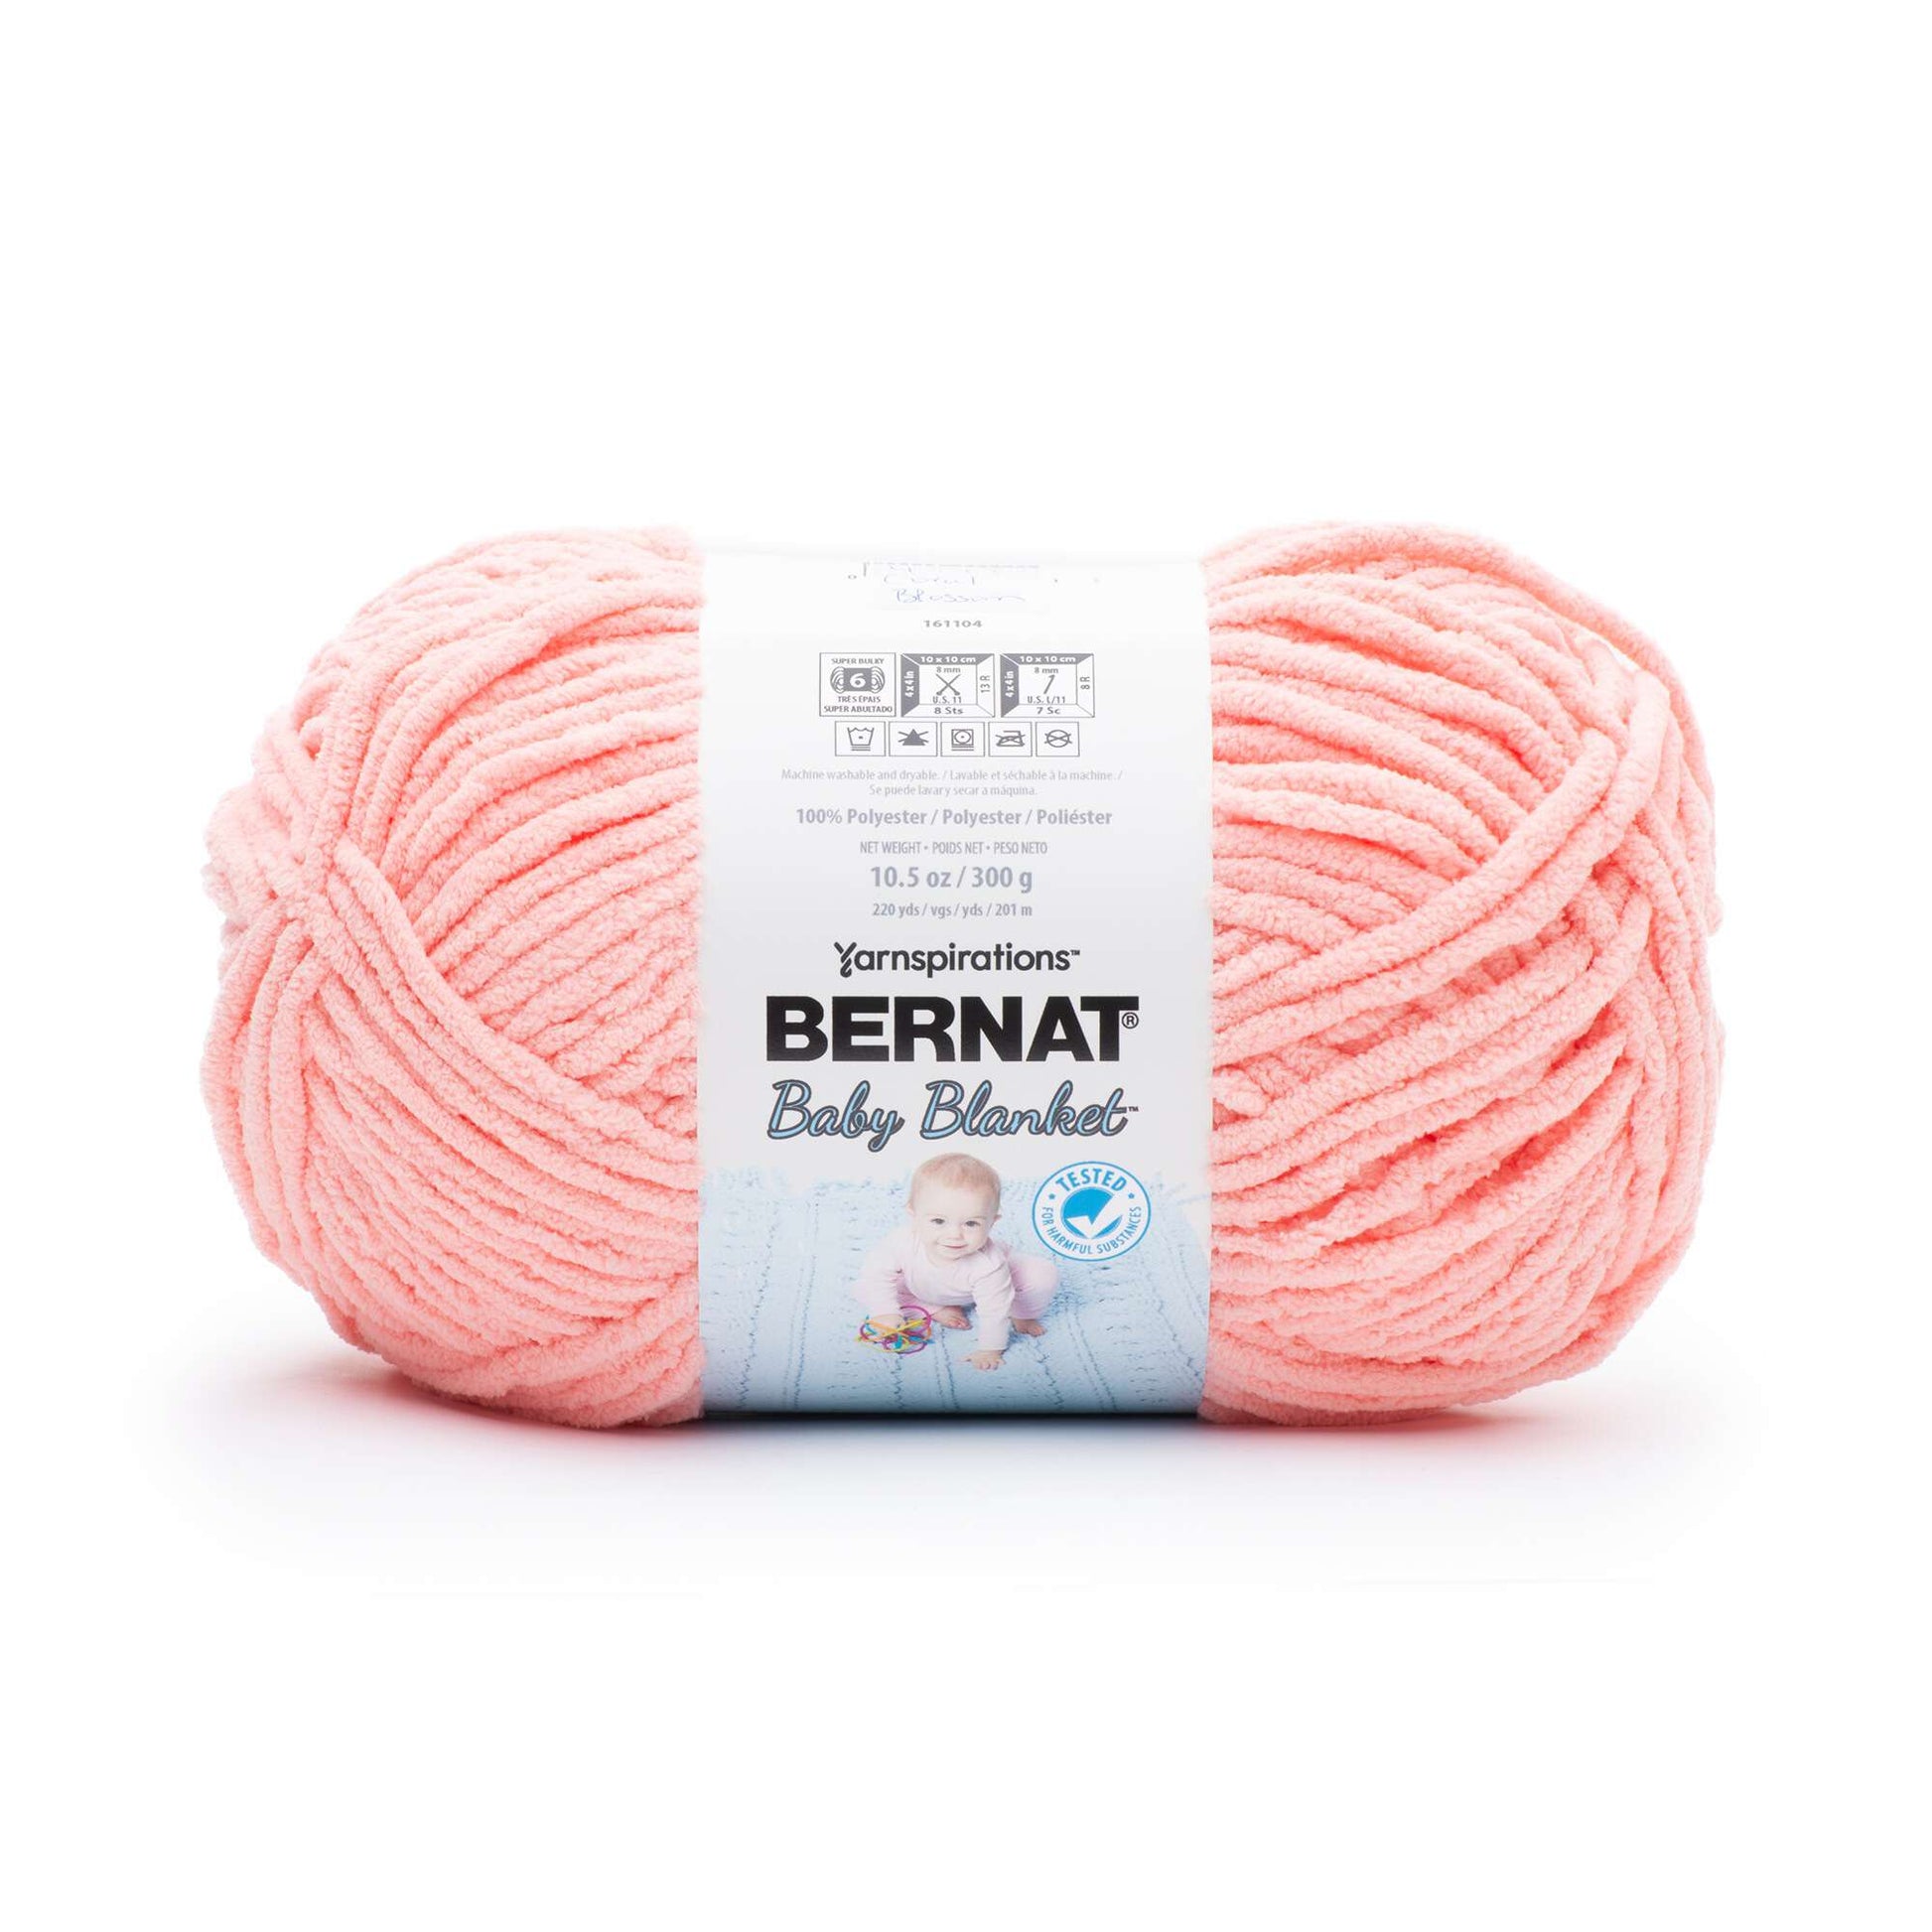 Bernat® Baby Blanket™ #6 Super Bulky Polyester Yarn, Lemon Lime  10.5oz/300g, 220 Yards (4 Pack)